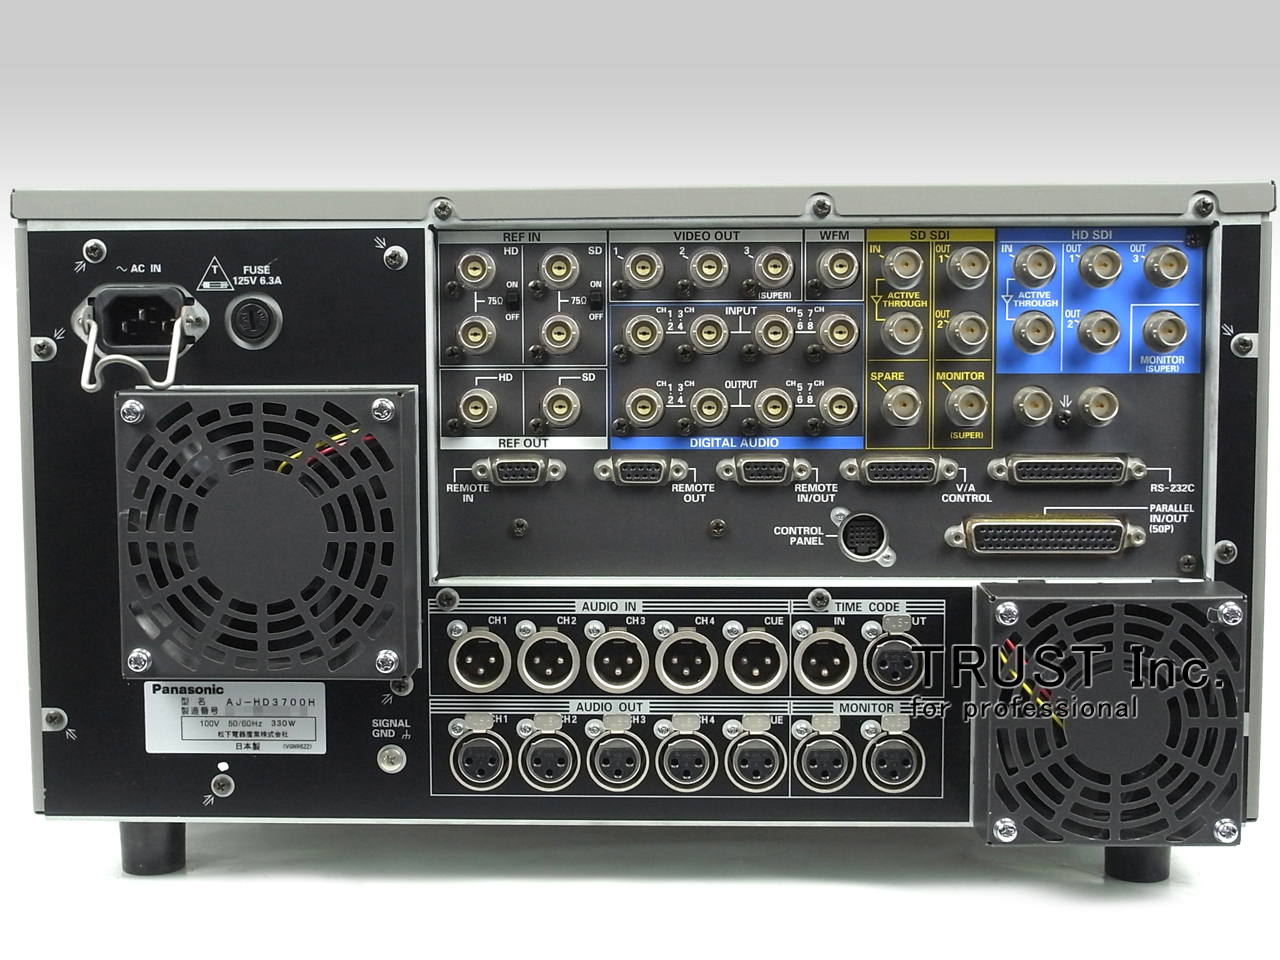 AJ-HD3700H / HD-D5 Recorder【中古放送用・業務用 映像機器・音響機器